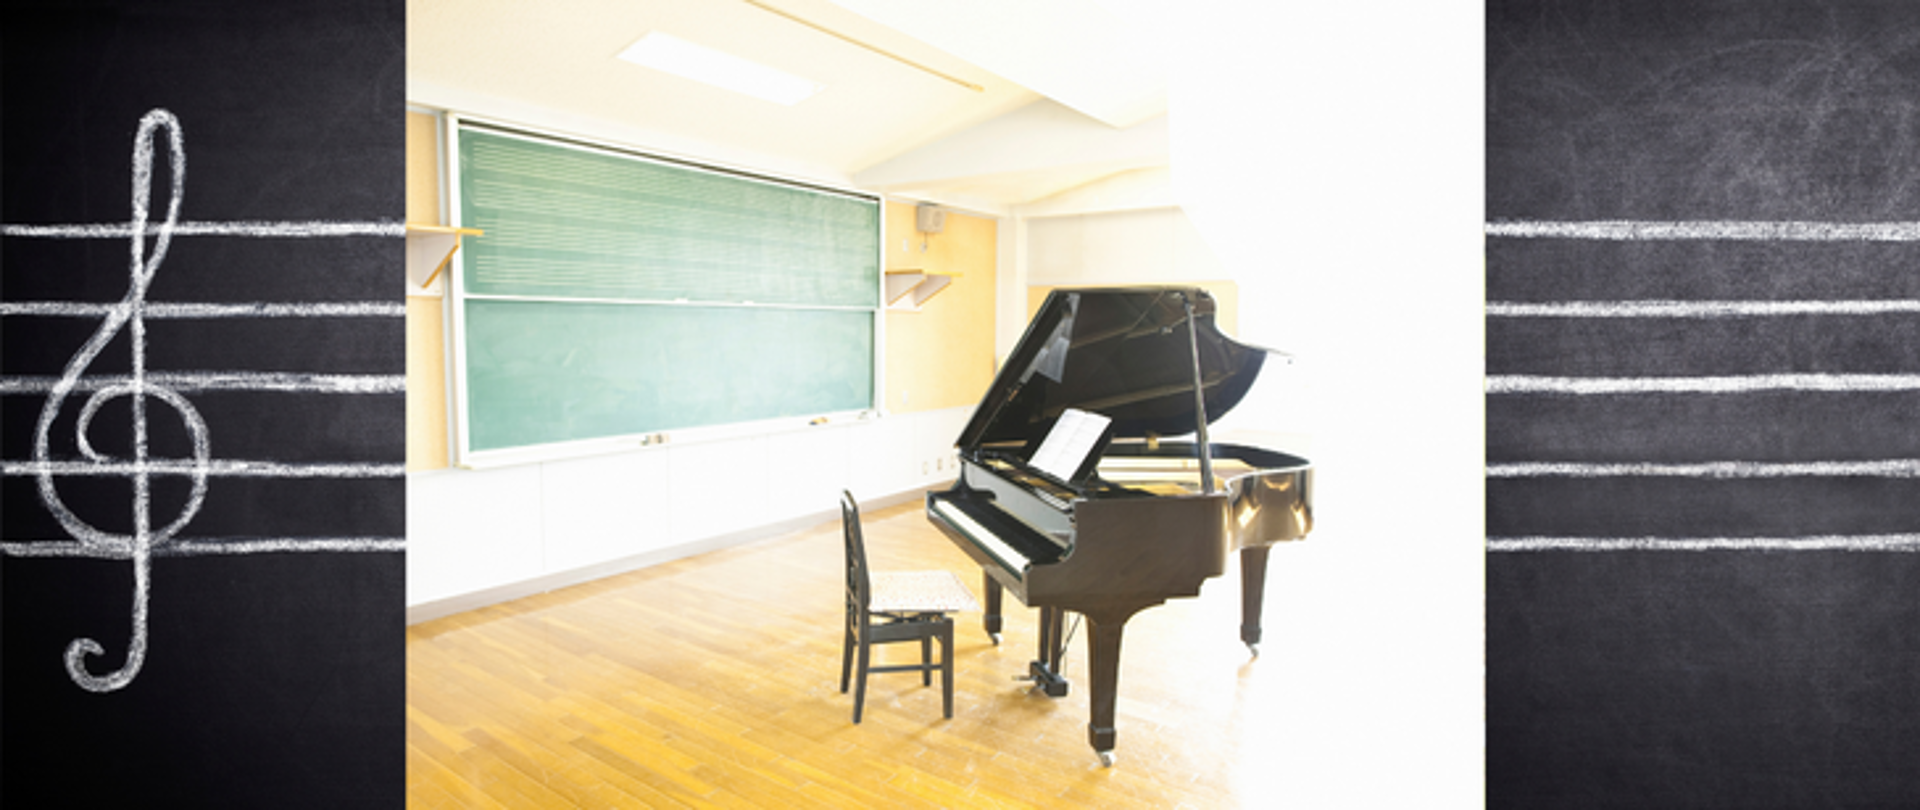 baner przedstawiający klasę lekcyjną z fortepianem , w tle banera czarna tablica z narysowaną kredą pięciolinią z kluczem wiolinowym